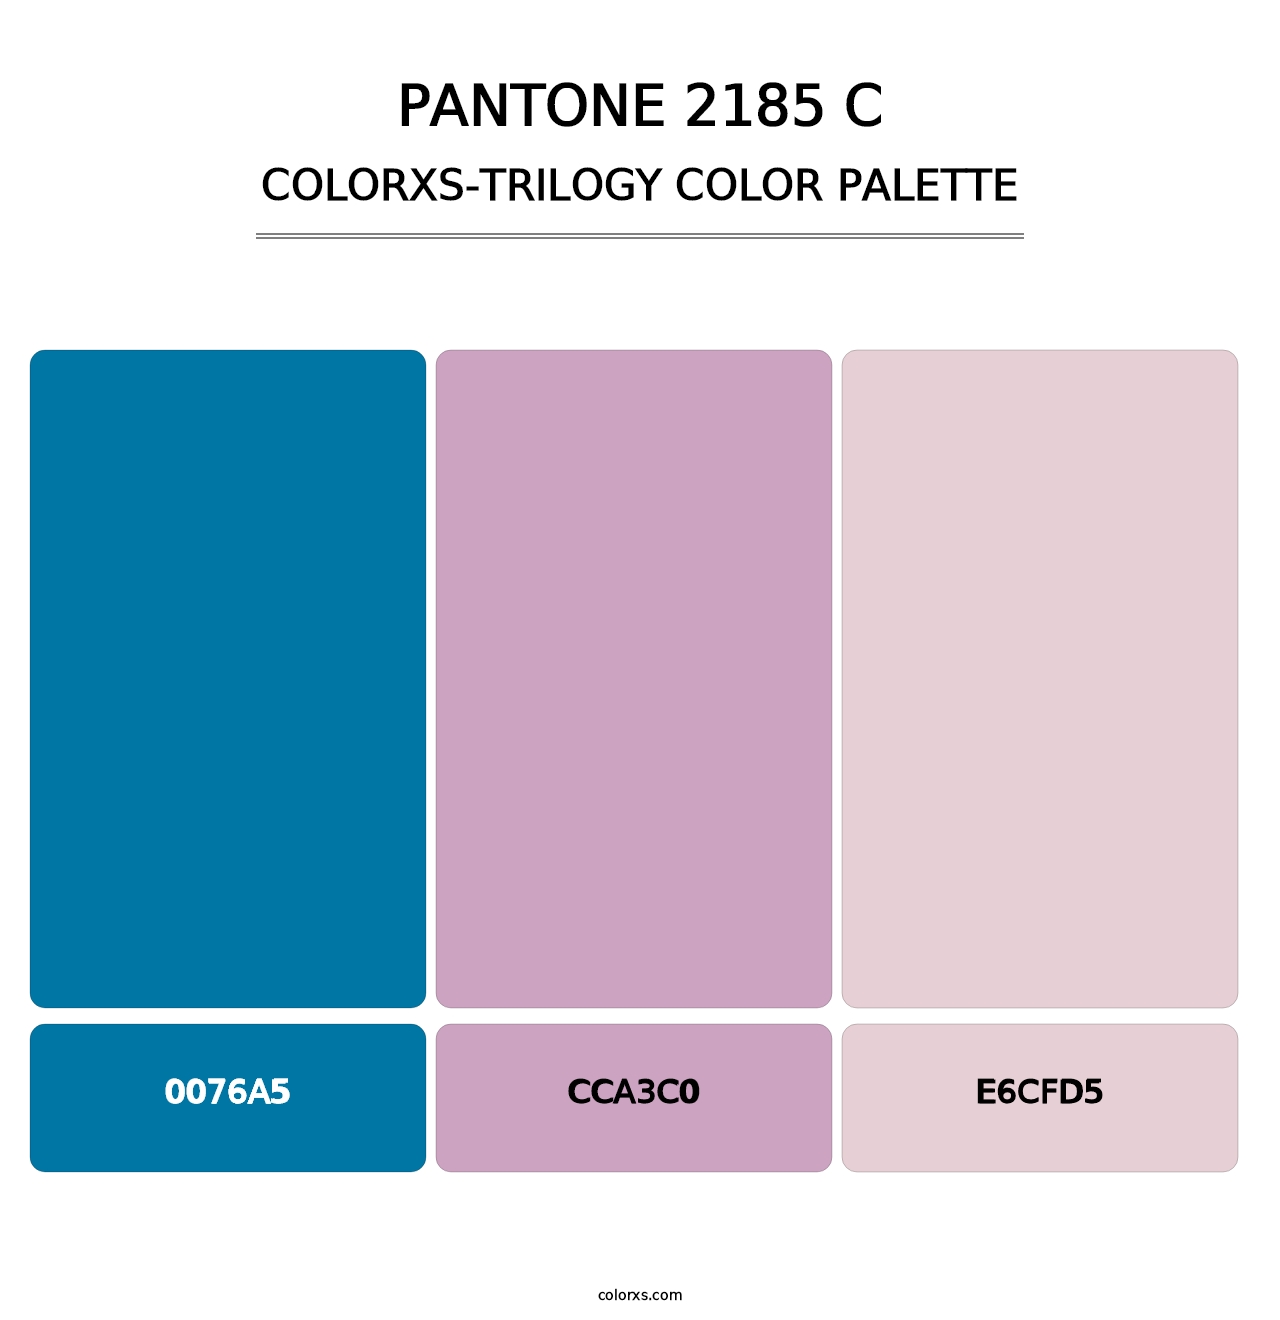 PANTONE 2185 C - Colorxs Trilogy Palette